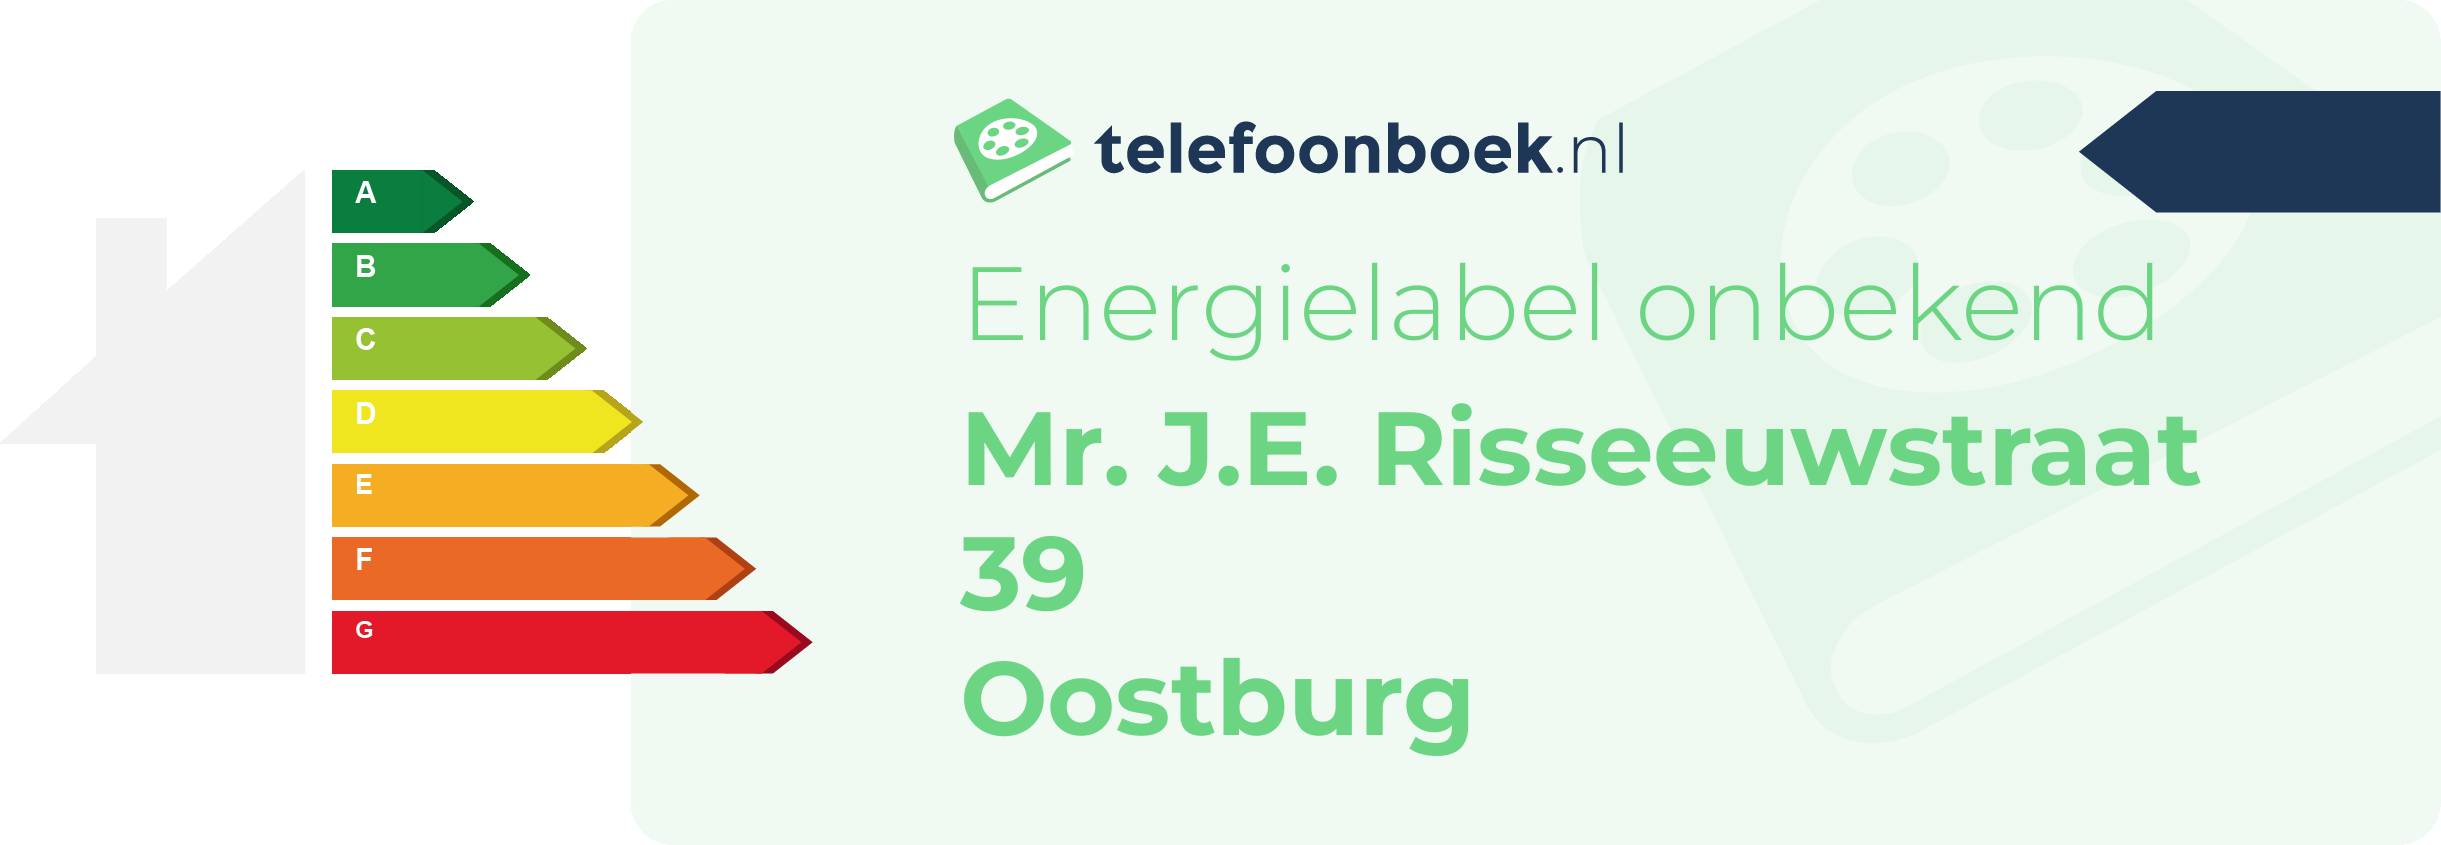 Energielabel Mr. J.E. Risseeuwstraat 39 Oostburg